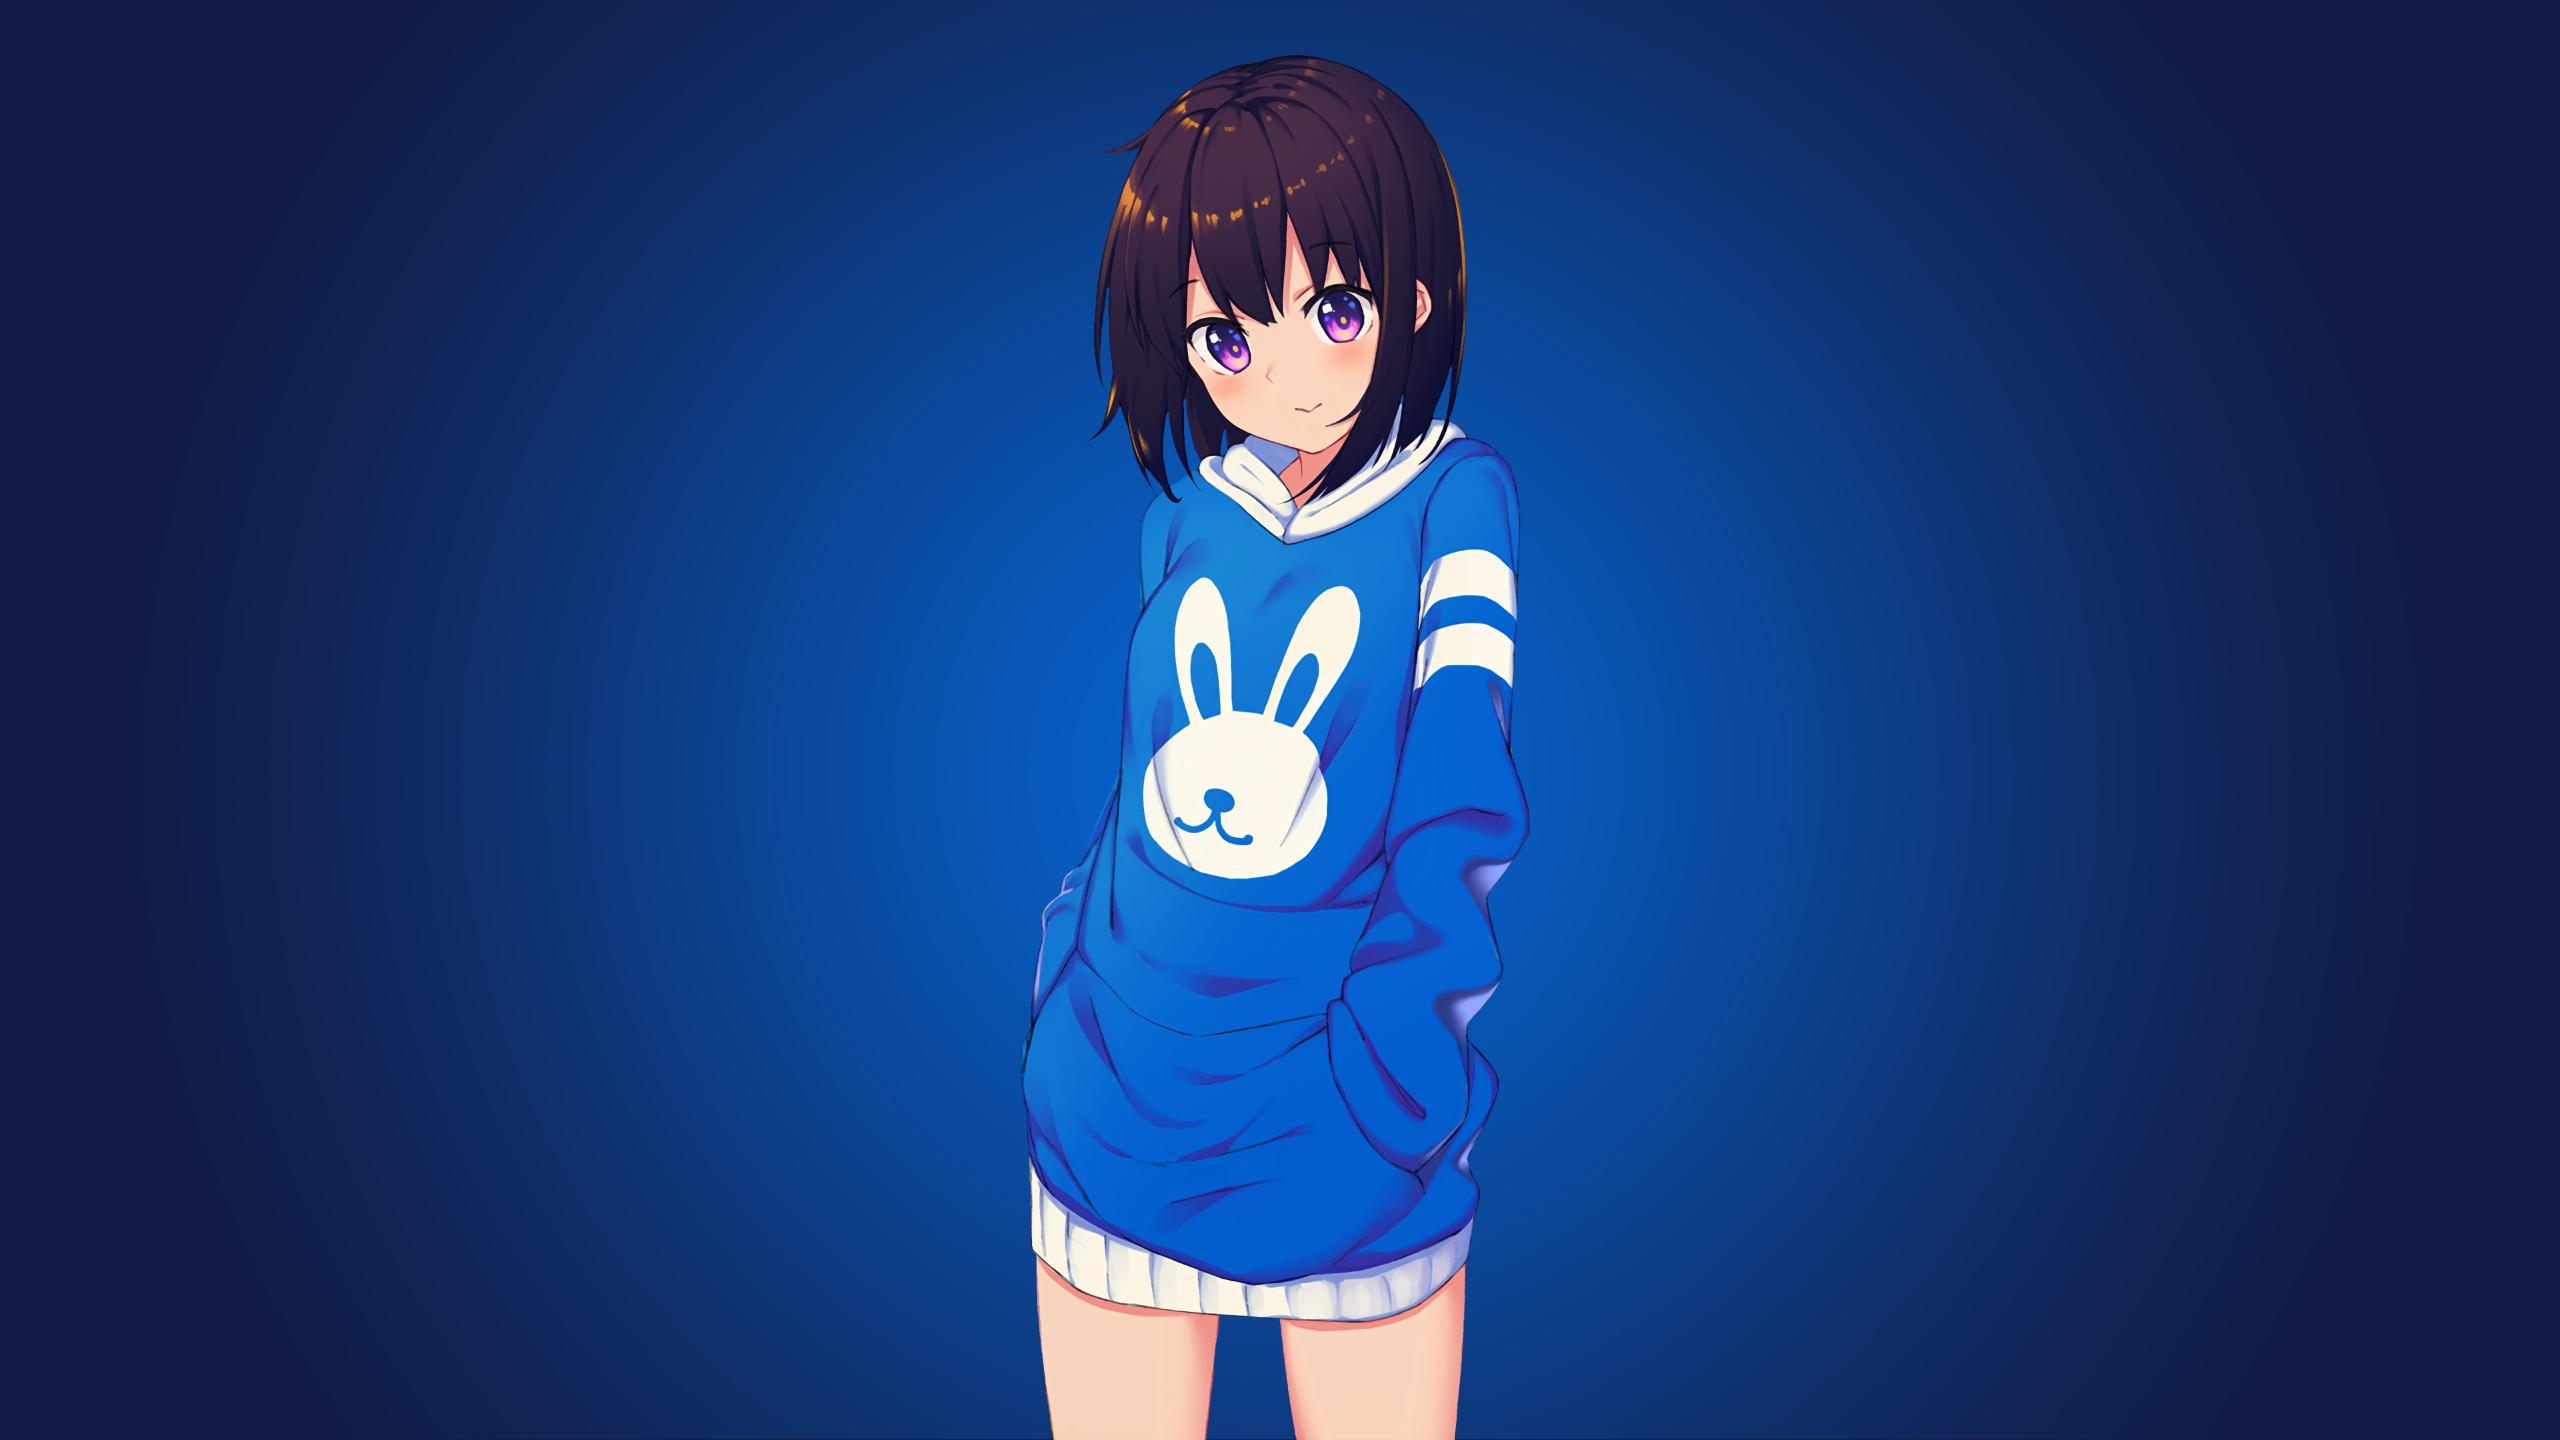 Bunny Anime Girl 1440P Resolution Wallpaper, HD Anime 4K